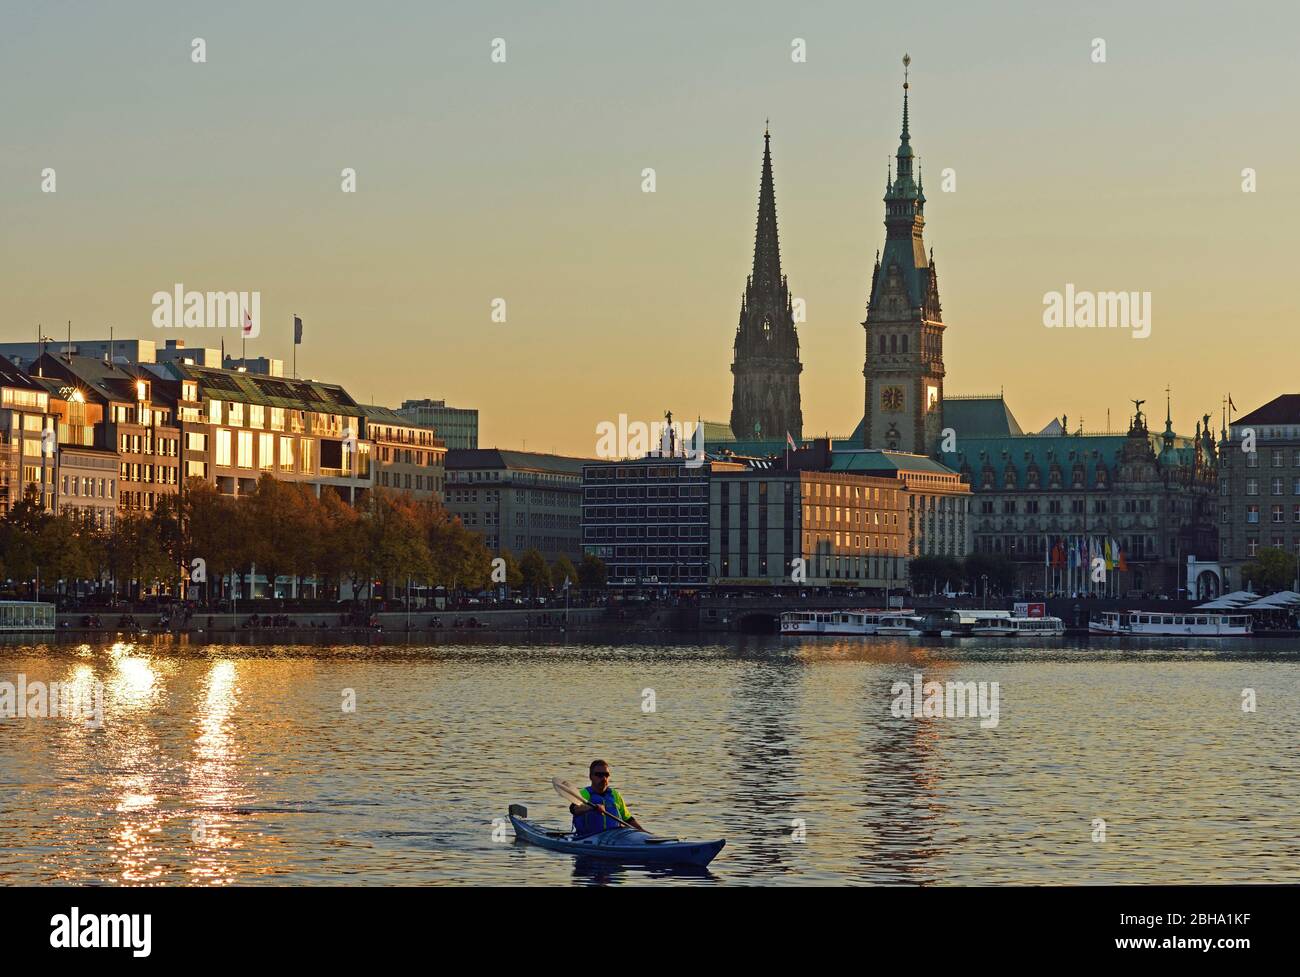 Europa, Alemania, Hamburgo, Ciudad, Binnenalster (lago Alster interior), torres de la ciudad, barco de remos, luz de noche, Foto de stock